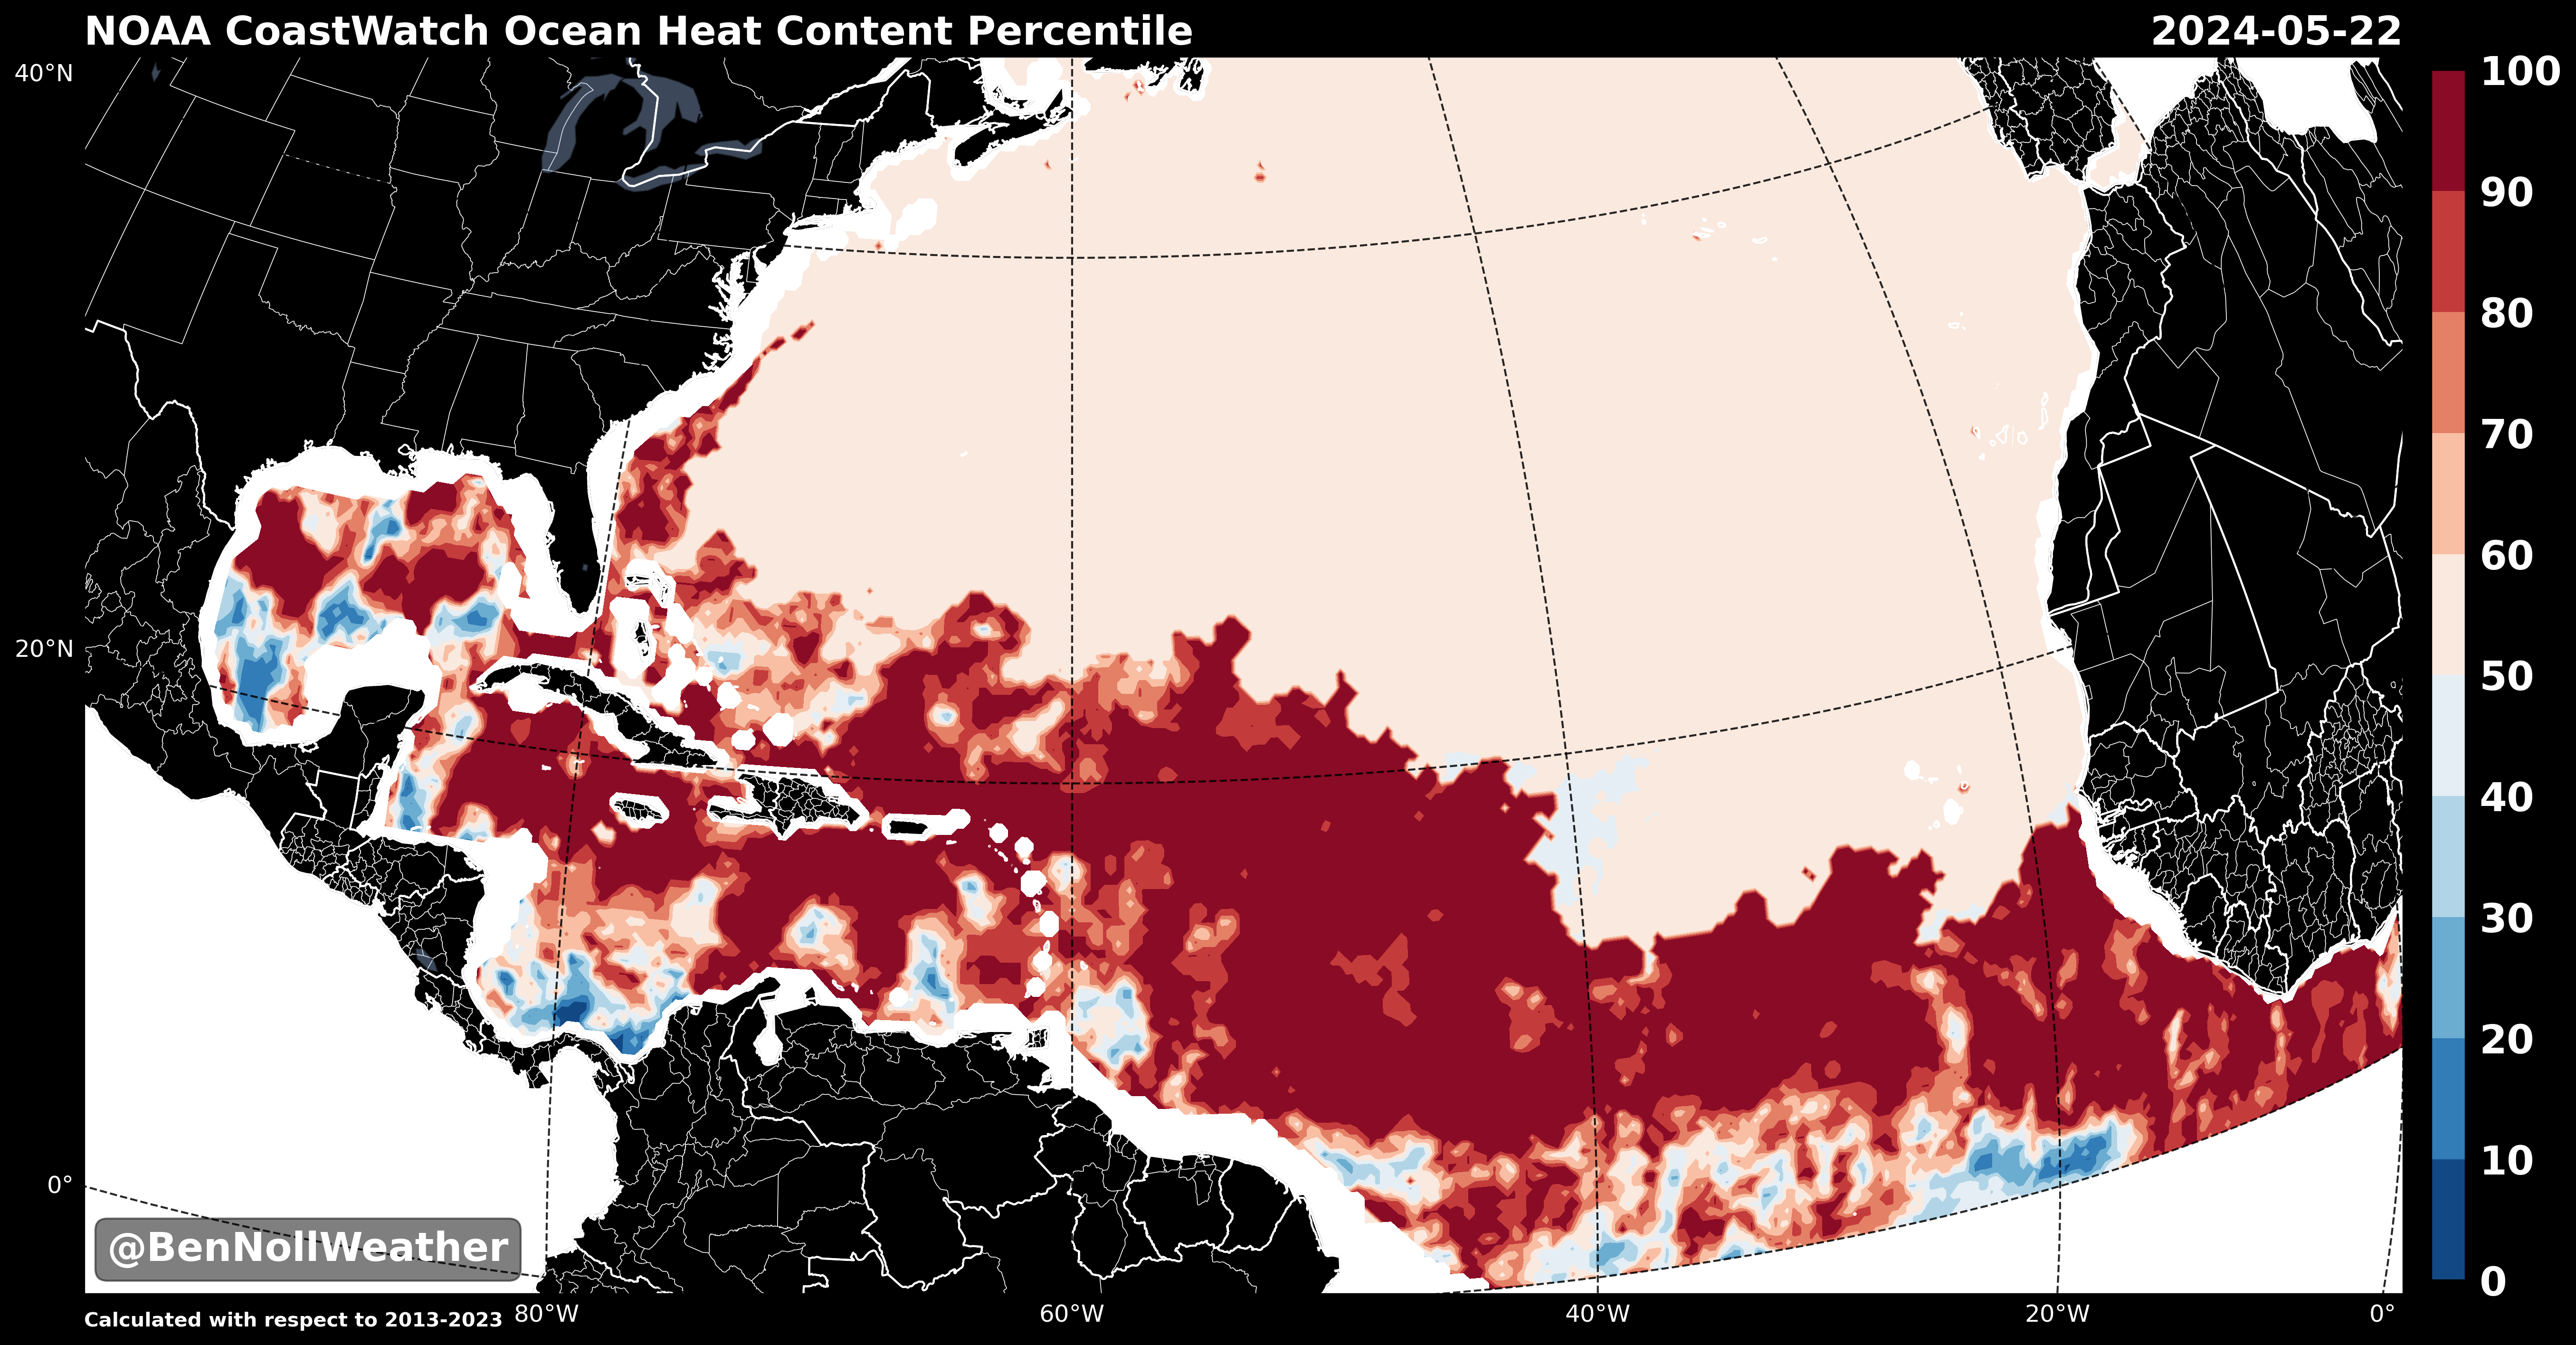 Ocean Heat Content Percentile